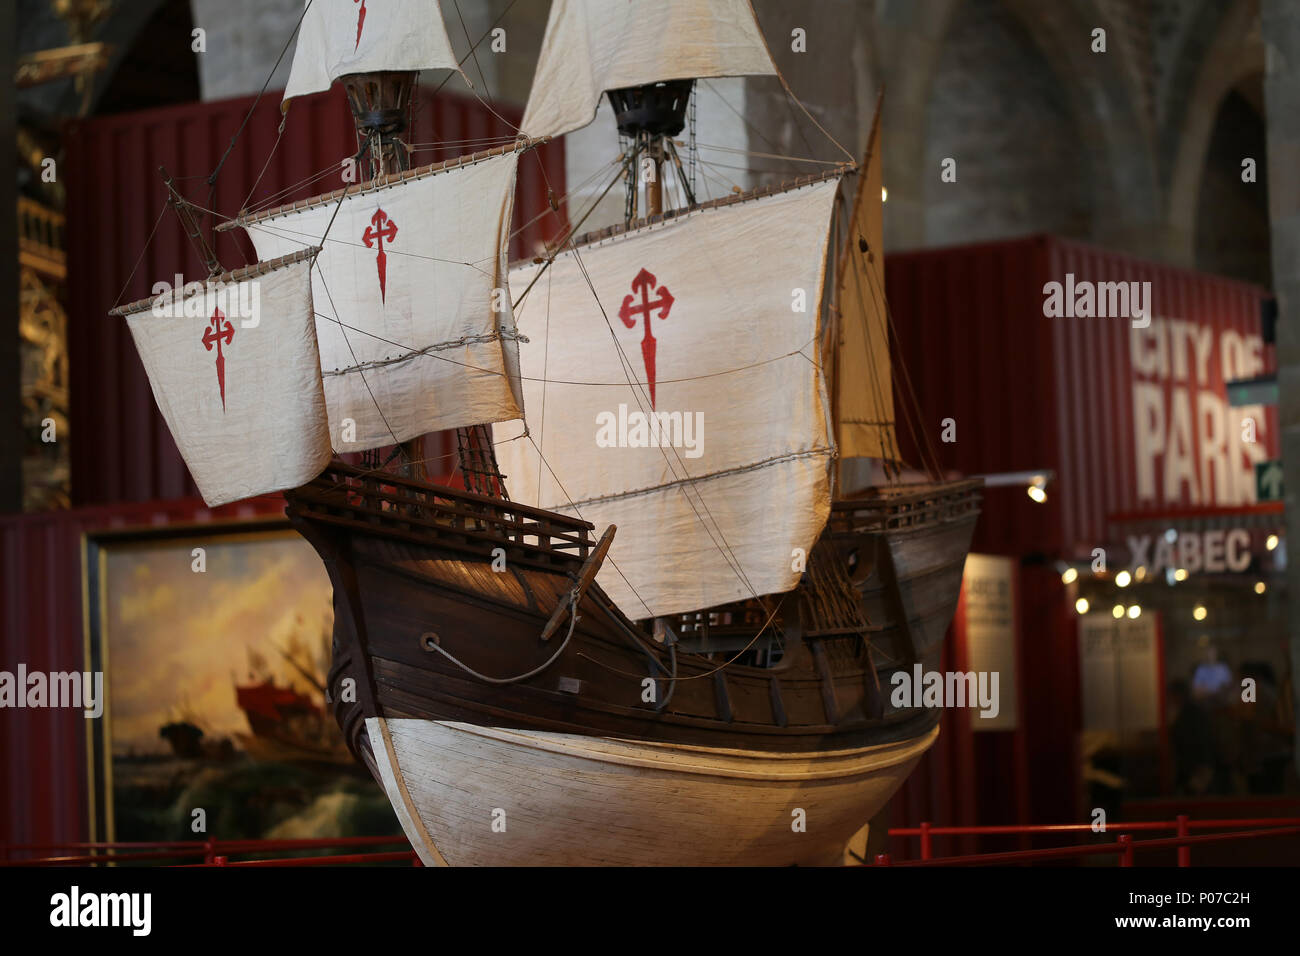 Modell Nao Victoria. Spanisch Carrack. 1. in die Welt umrunden, mit Magellan. 1519-1522. Barcelona Maritime Museum. Spanien. Stockfoto